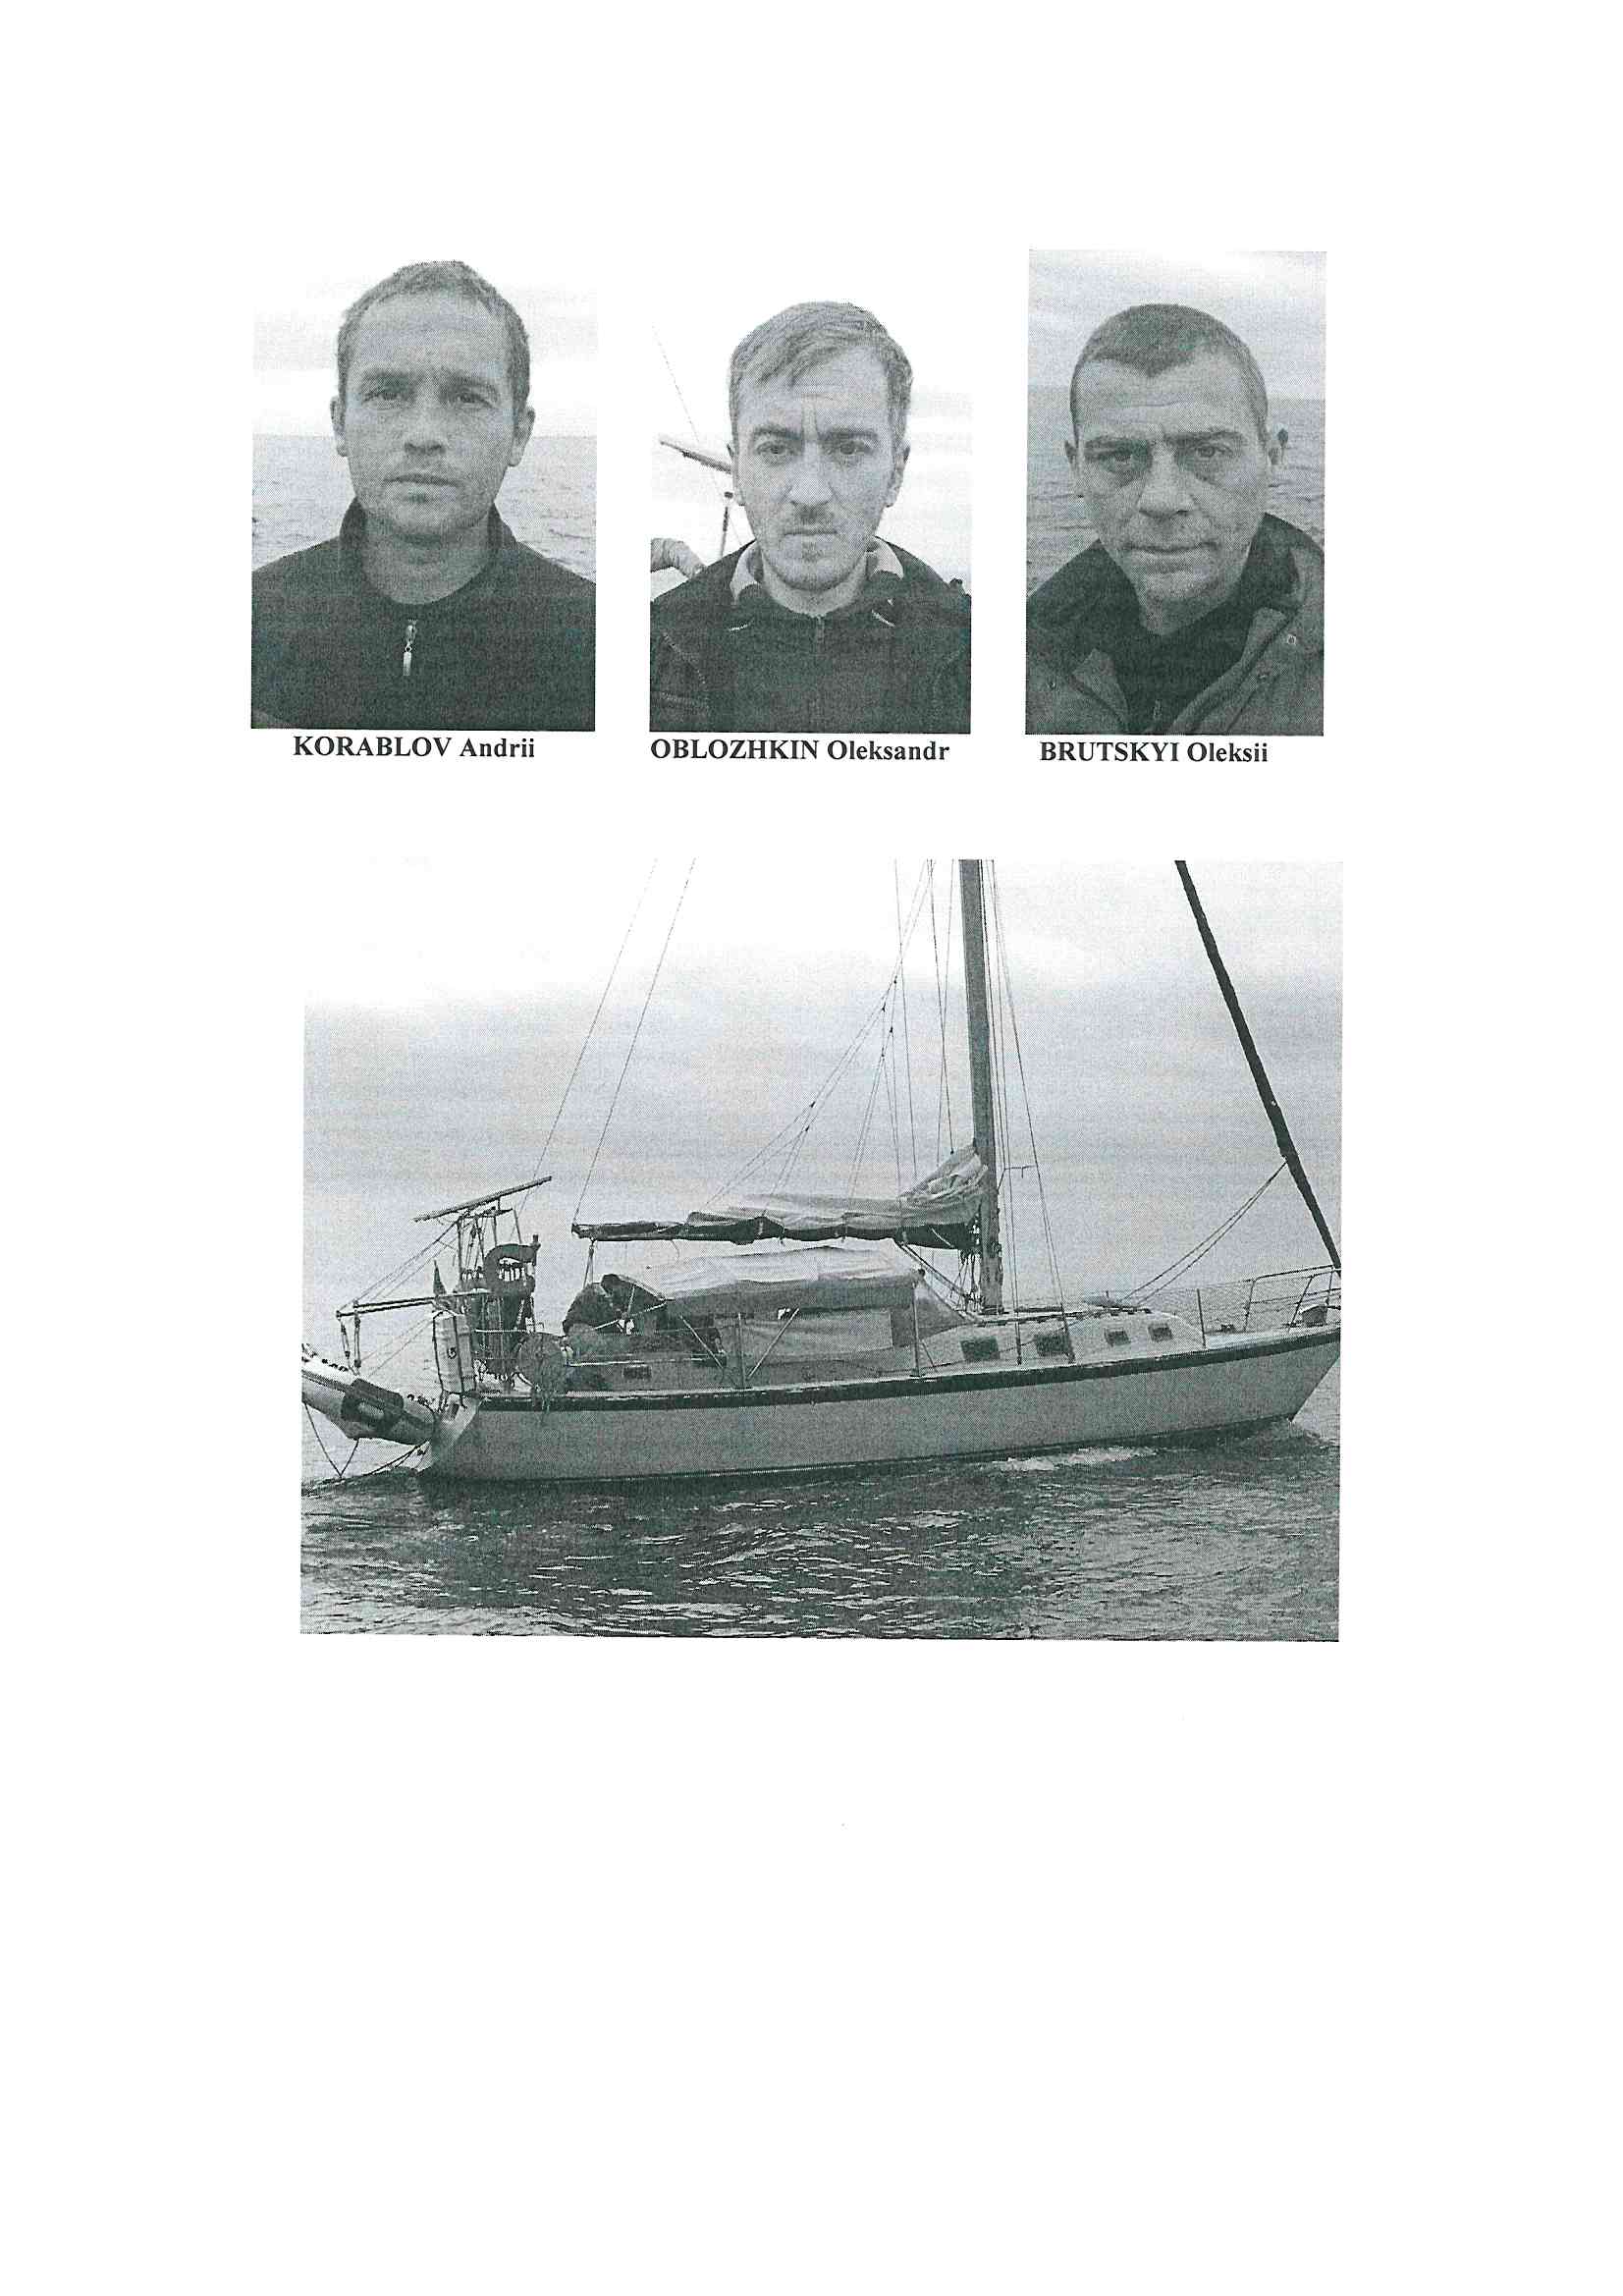 Foto arrestati ed imbarcazione